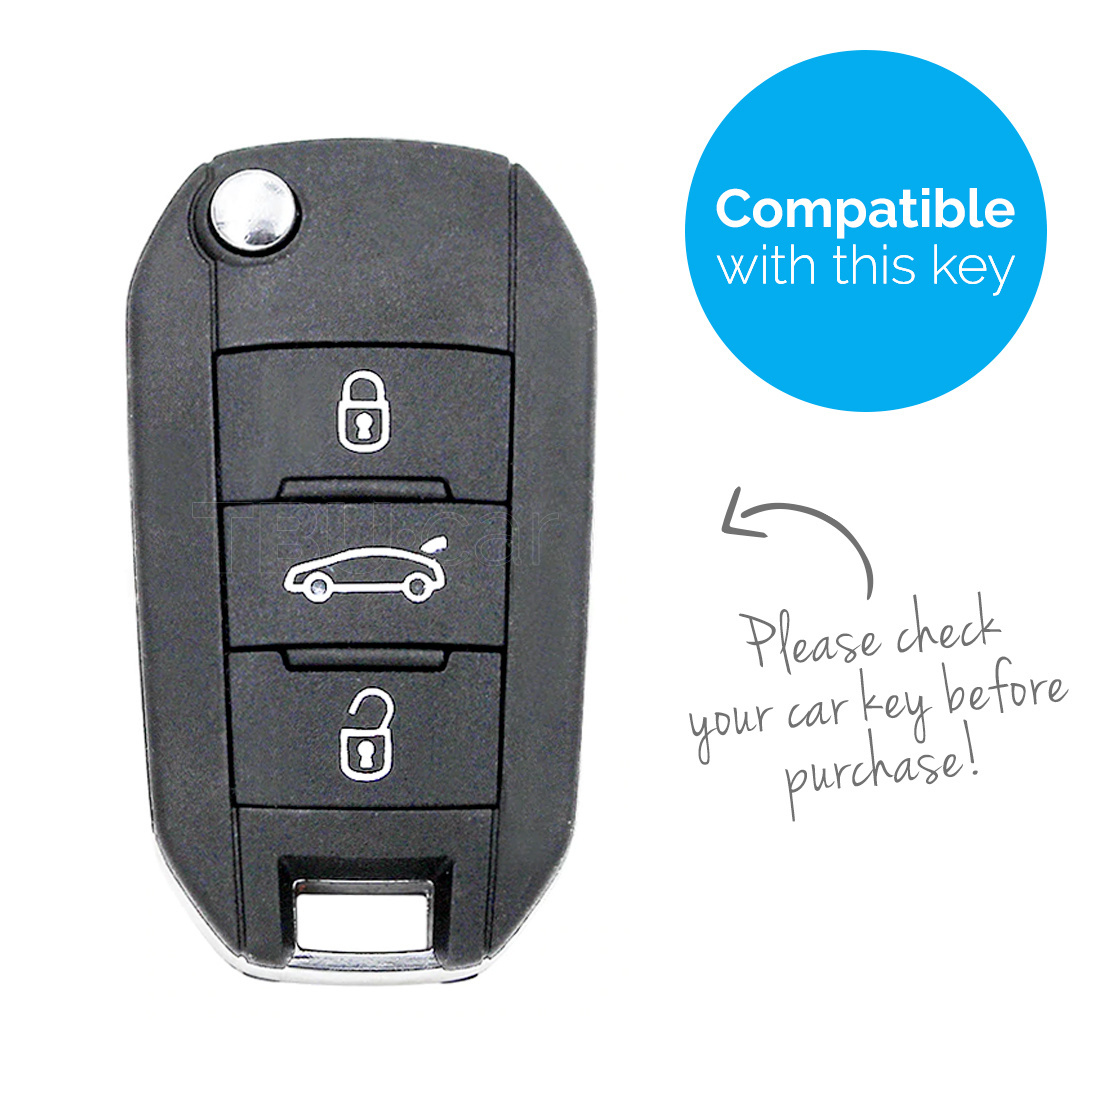 TBU car TBU car Cover chiavi auto compatibile con Peugeot - Copertura protettiva - Custodia Protettiva in Silicone - Verde lime